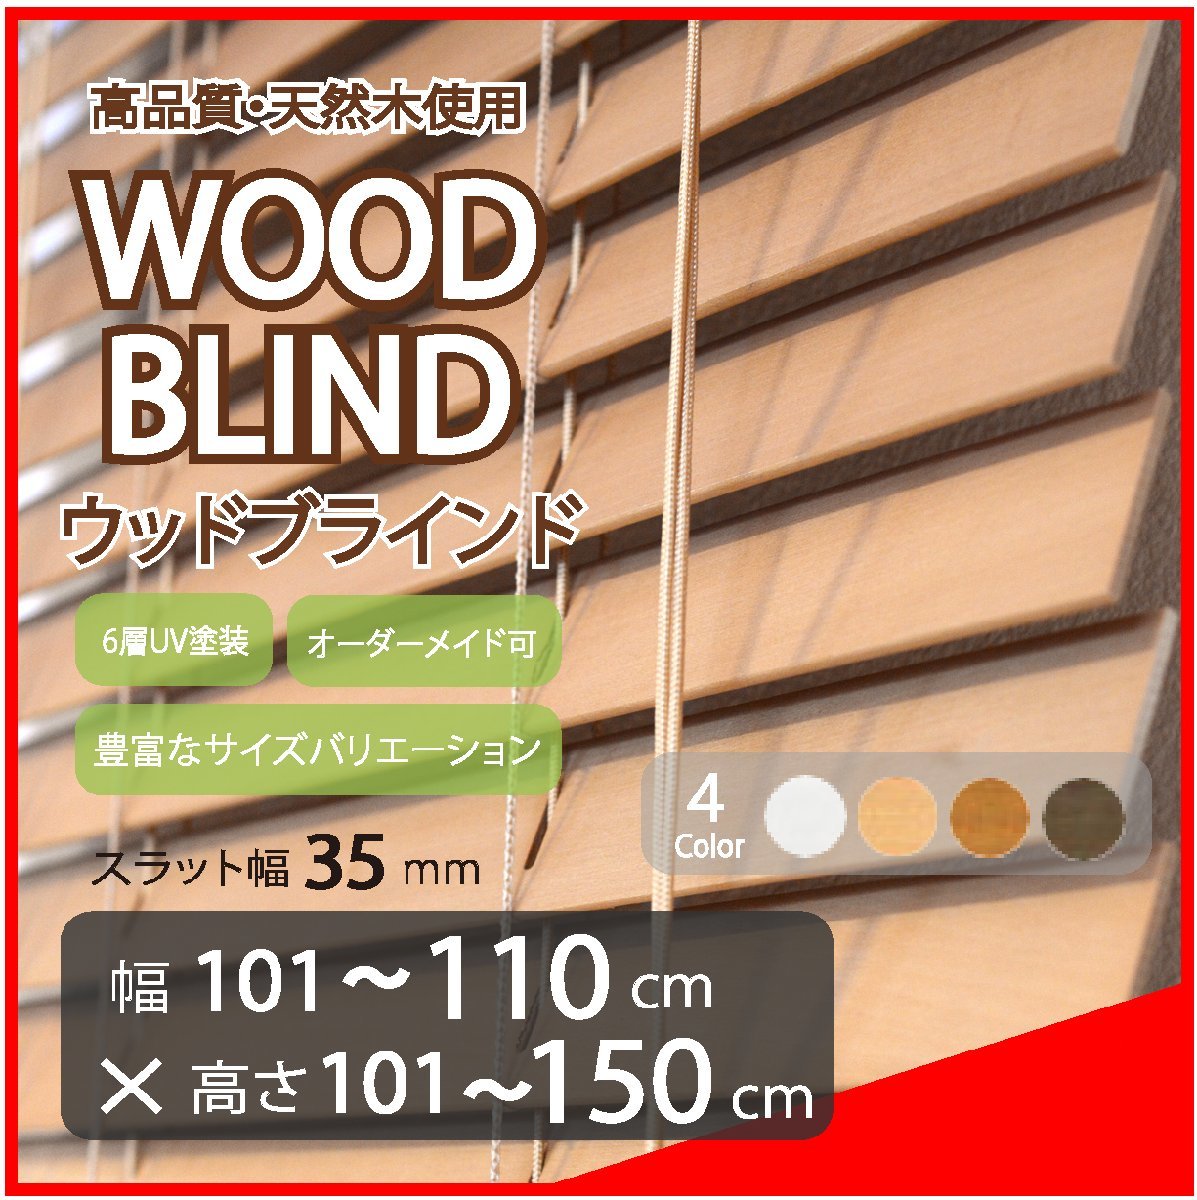 窓枠に合わせてサイズ加工が可能 高品質 木製 ウッド ブラインド オーダー可 スラット(羽根)幅35mm 幅101～110cm×高さ101～150cm